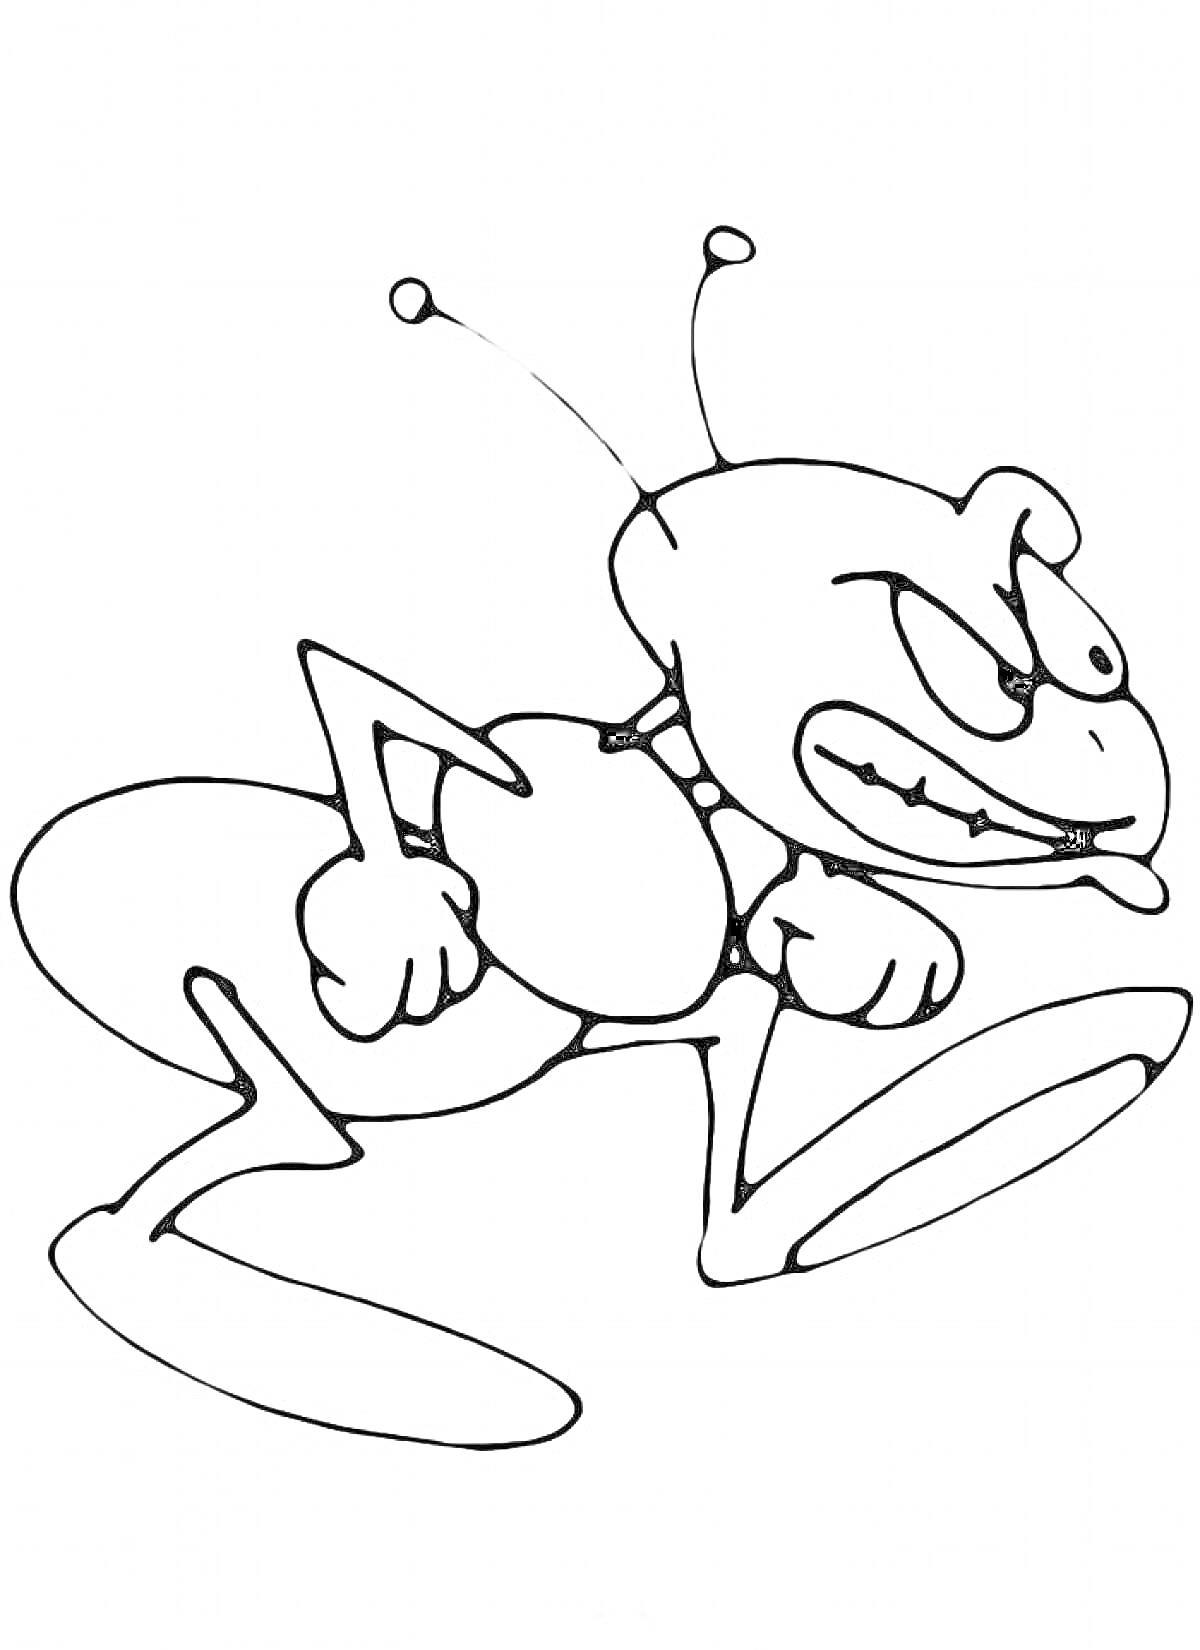 Раскраска Антропоморфный муравей с нахмуренным выражением лица и поднятыми кулаками